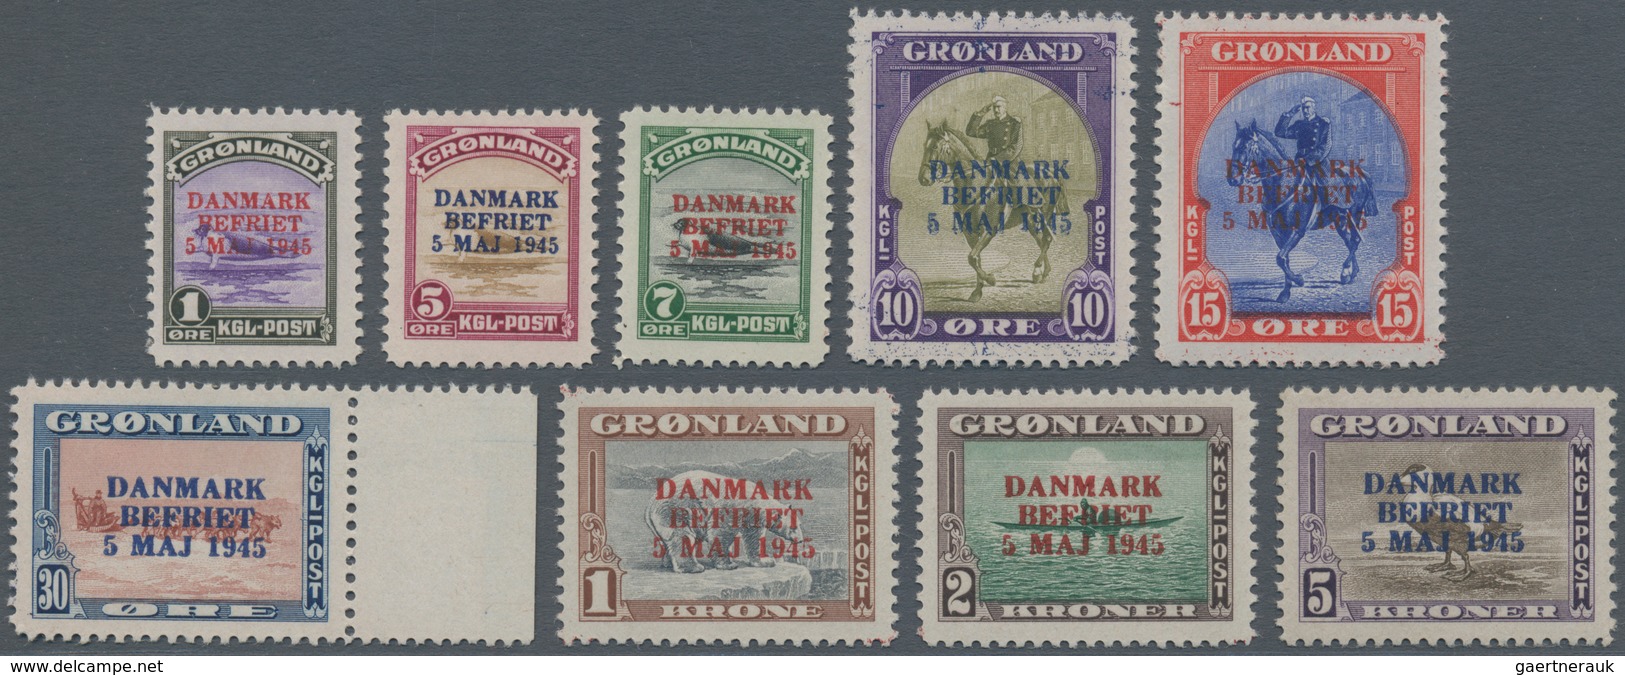 Dänemark - Grönland: 1945, Overprints "DANMARK BEFRIET", Complete Set Of Nine Values, Unmounted Mint - Covers & Documents